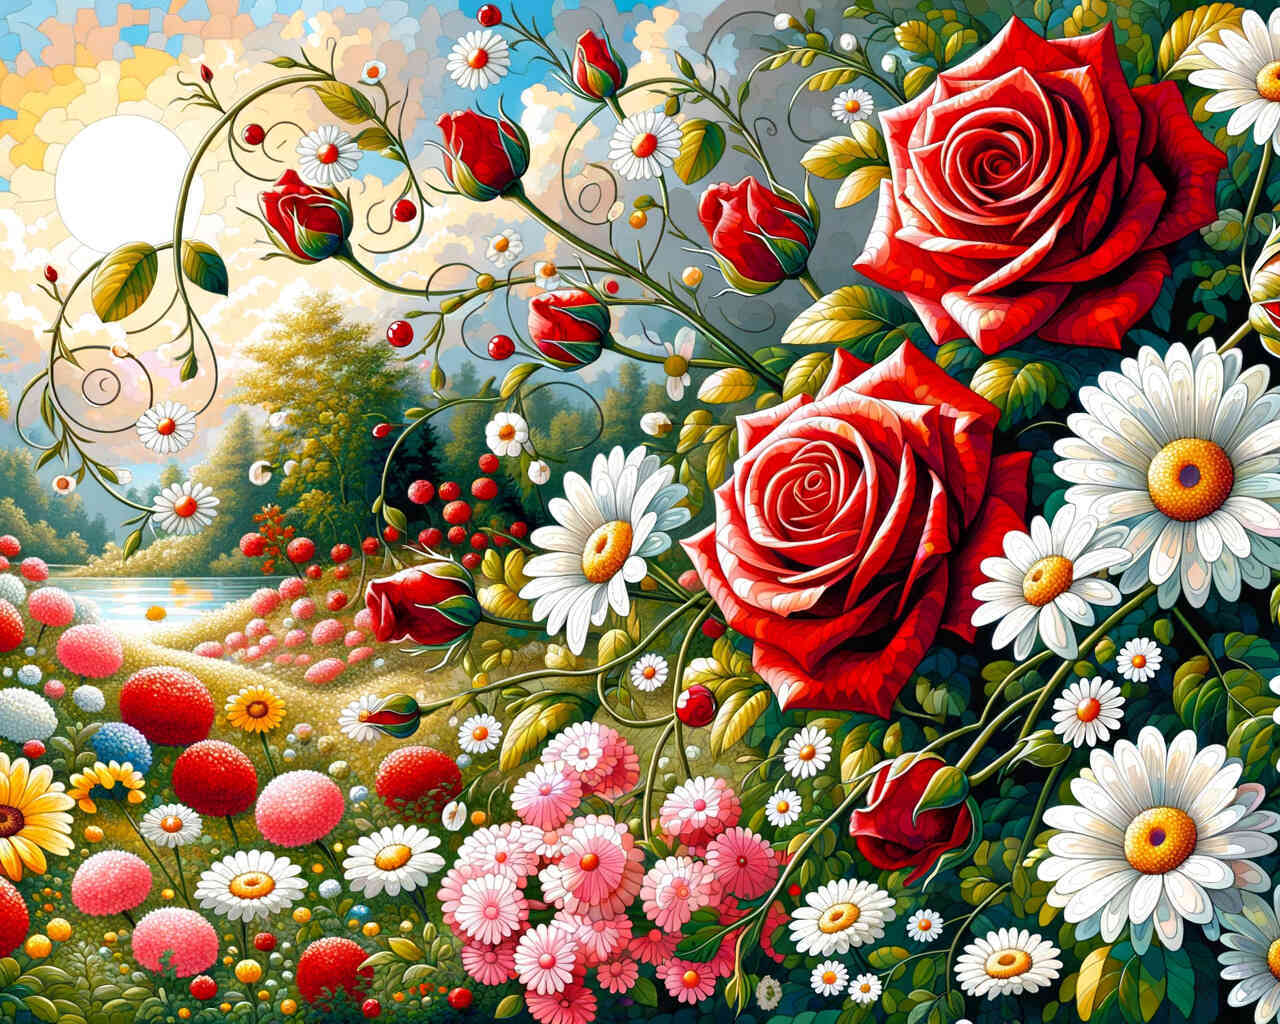 Diamond Painting - Rosen und Gänseblümchen